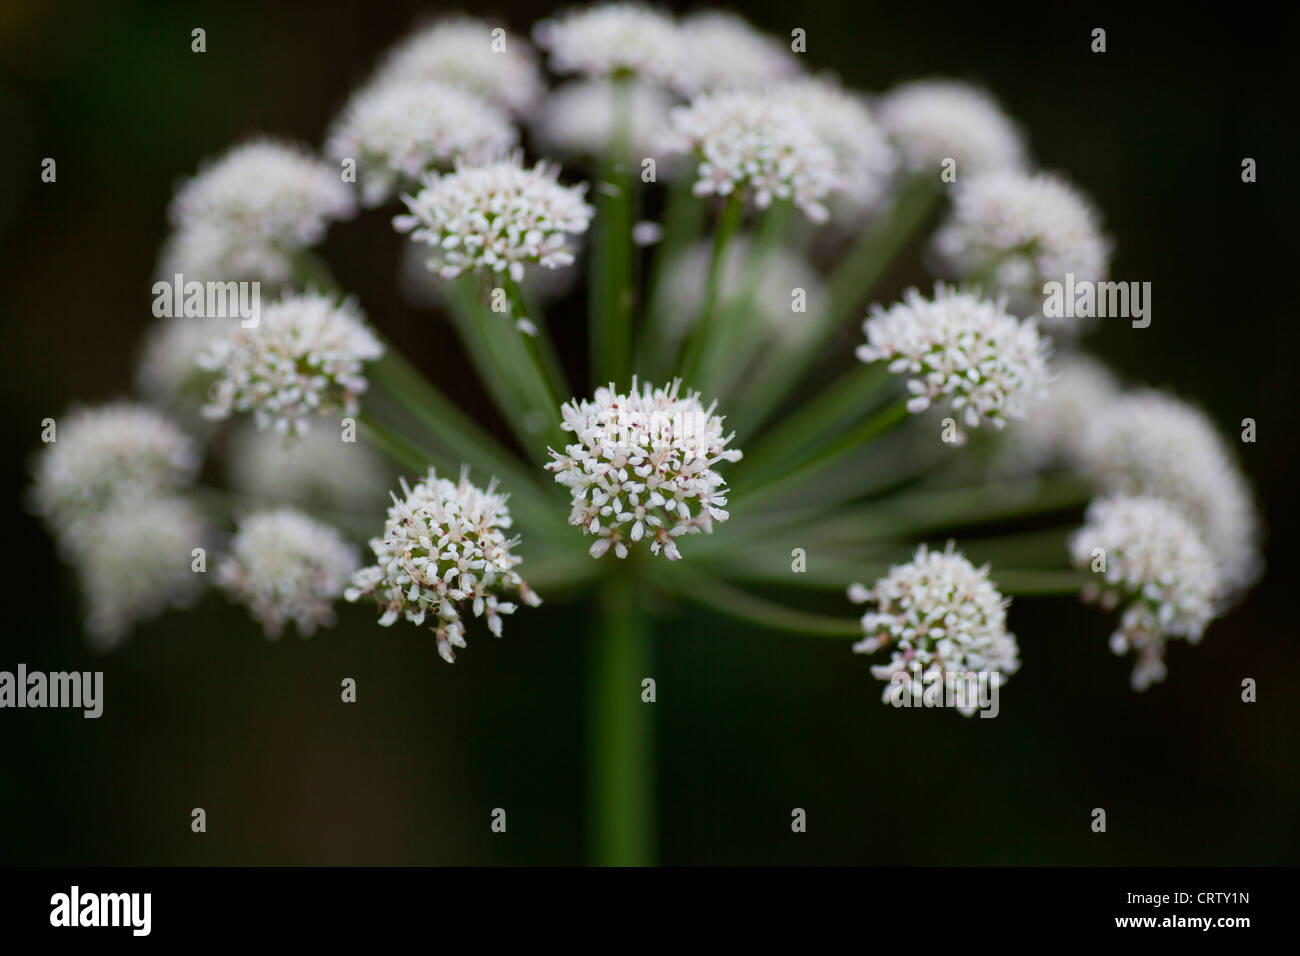 White Umbellifer flower Stock Photo